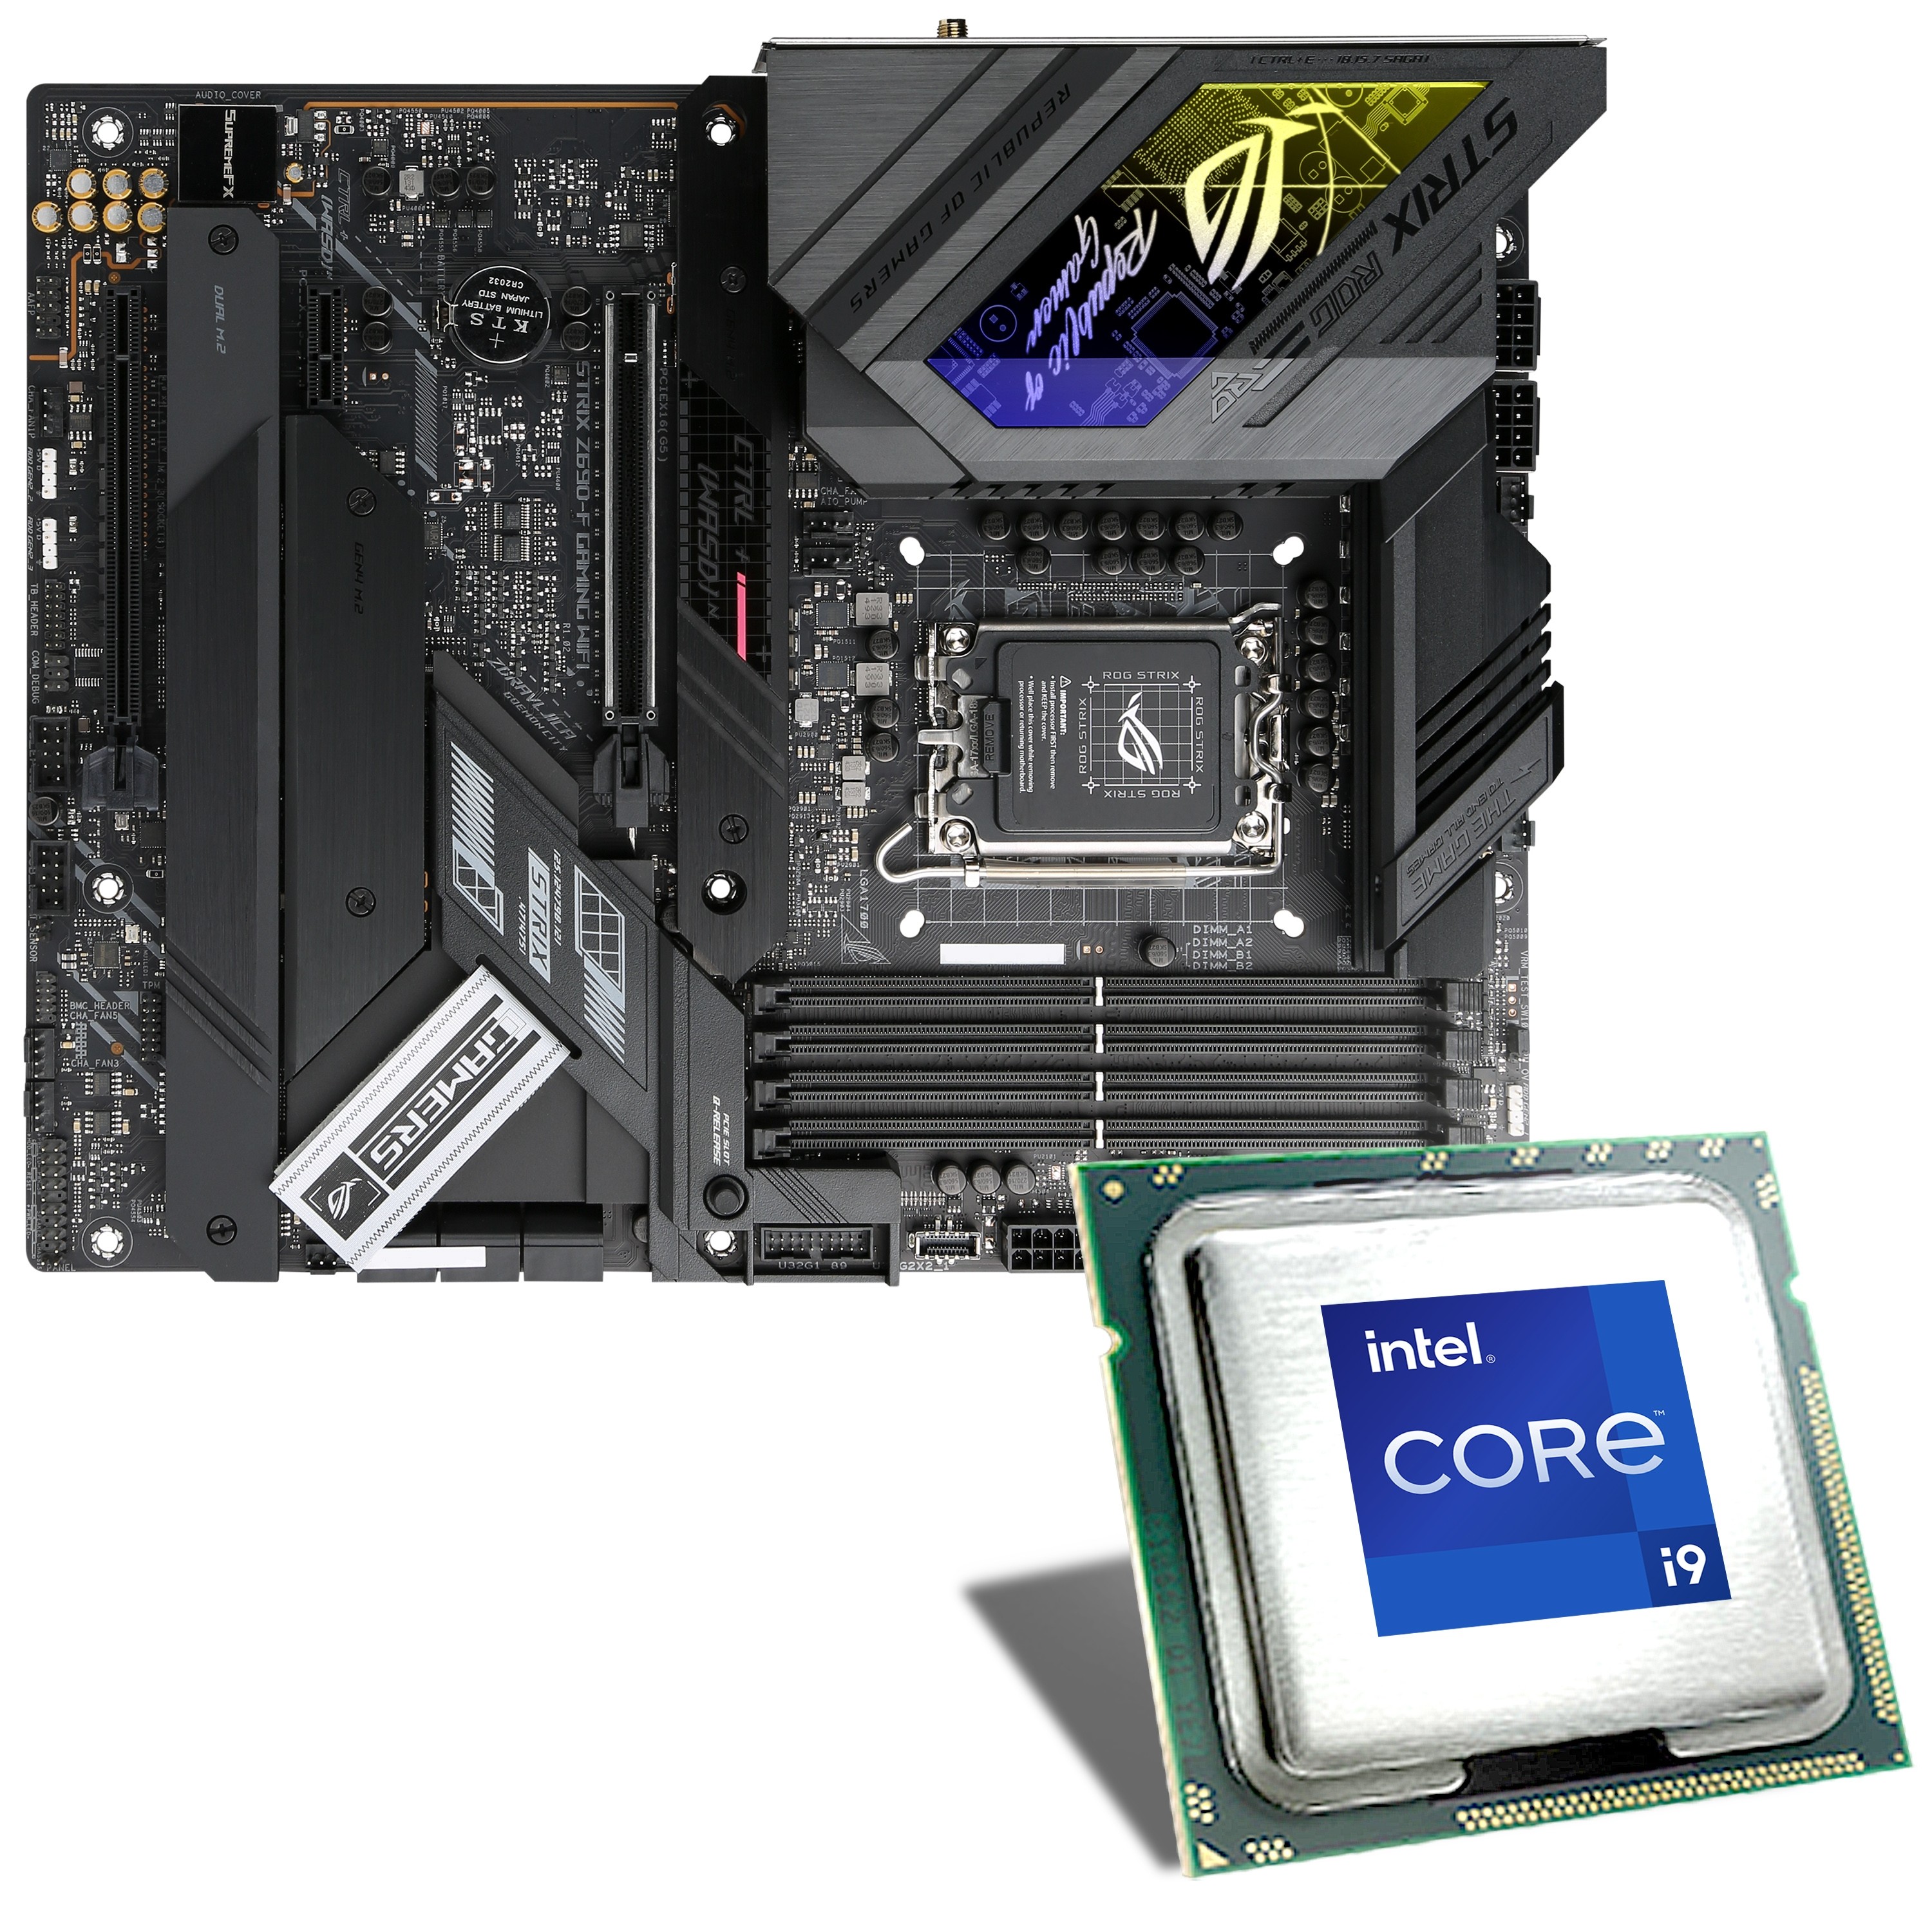 Processeur de Bureau Intel Core i7-6700 Socket 1151 3,40 GHz 8 GT